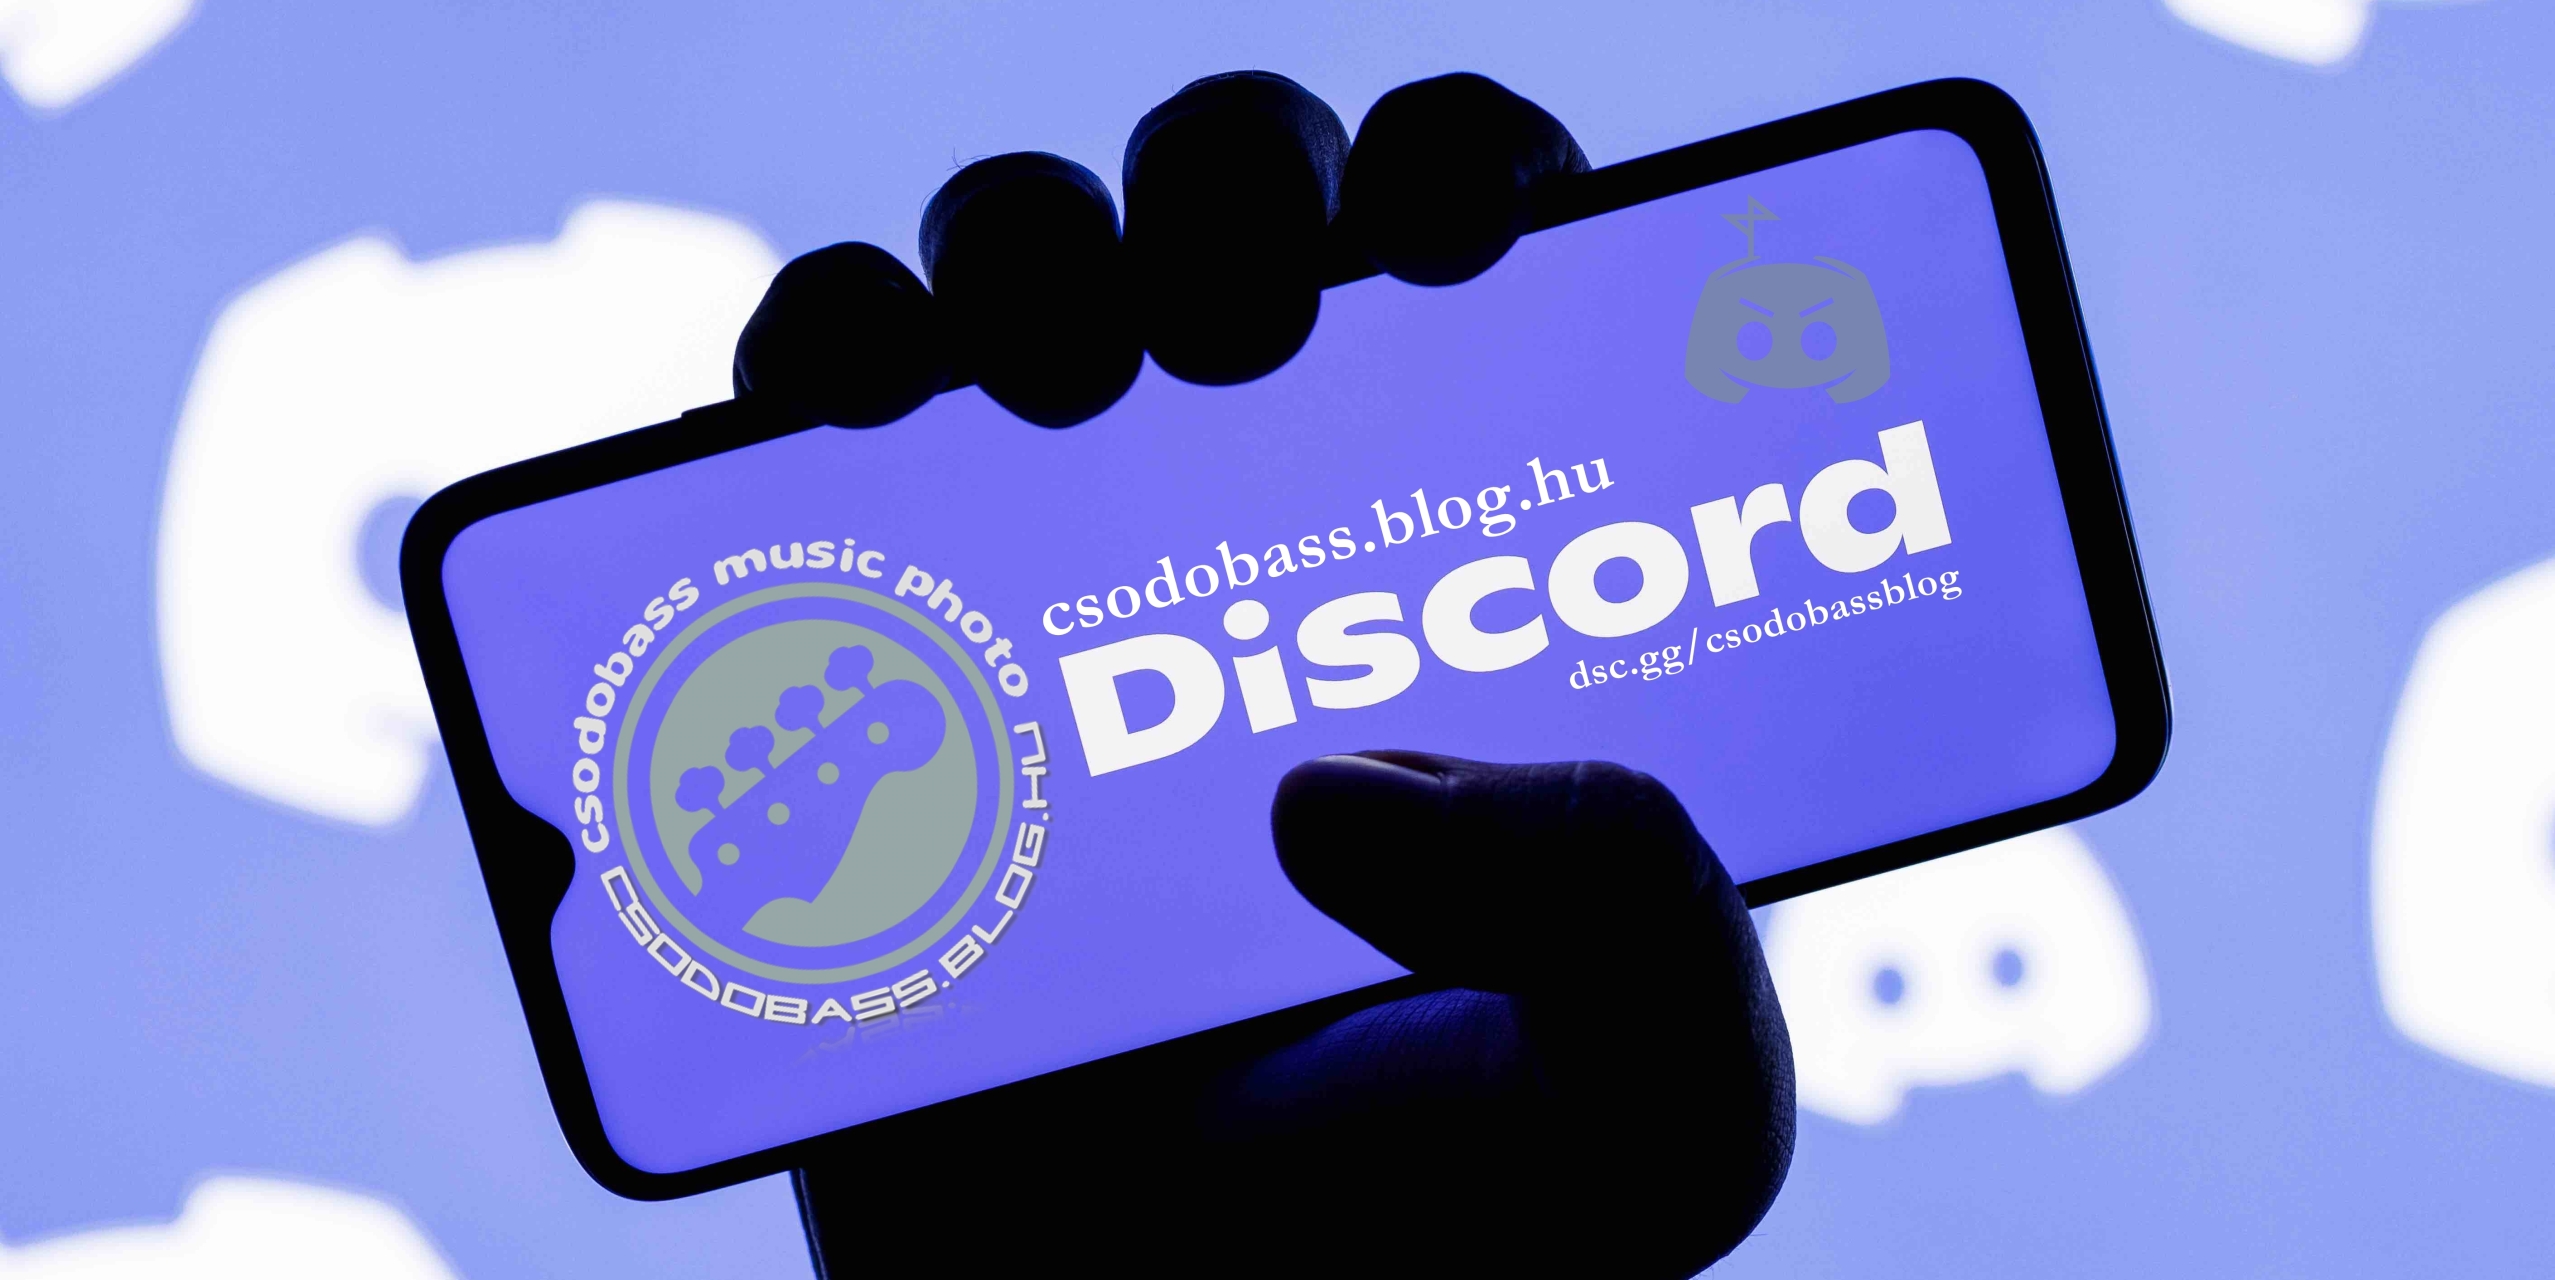 csodobass_discord_logo_02_cut_3a.jpg